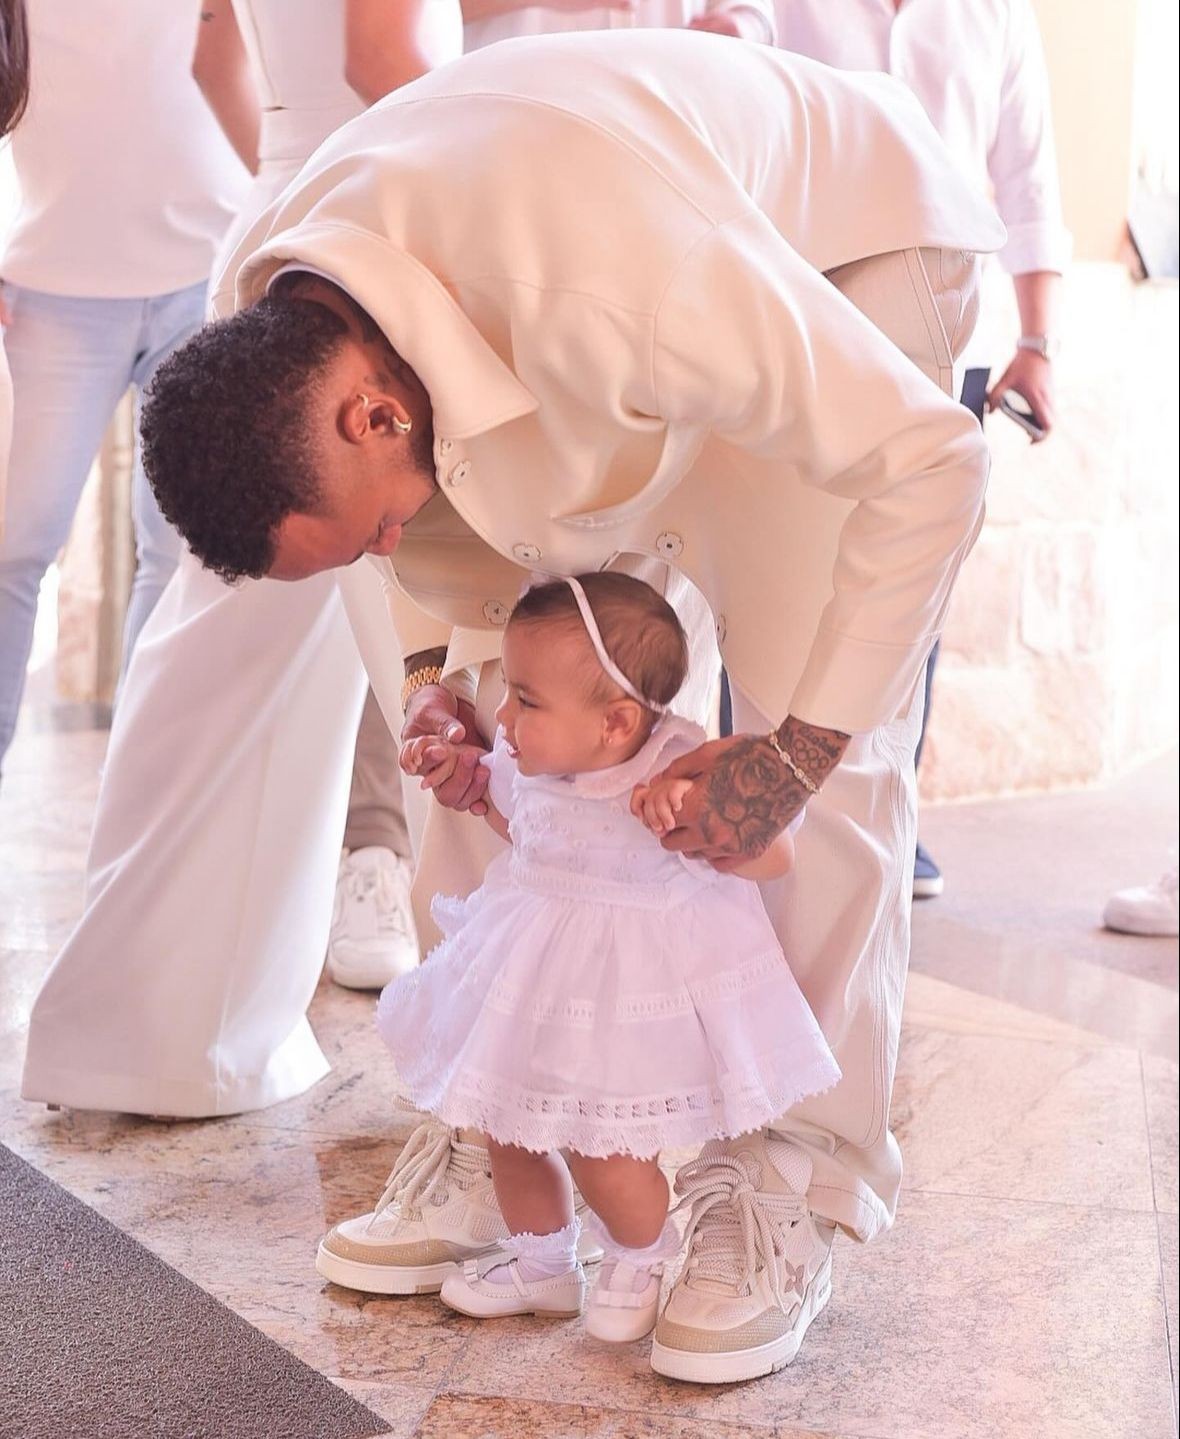 Mavie, filha de Neymar e Bruna Biancardi, é batizada em SP — Foto: extra